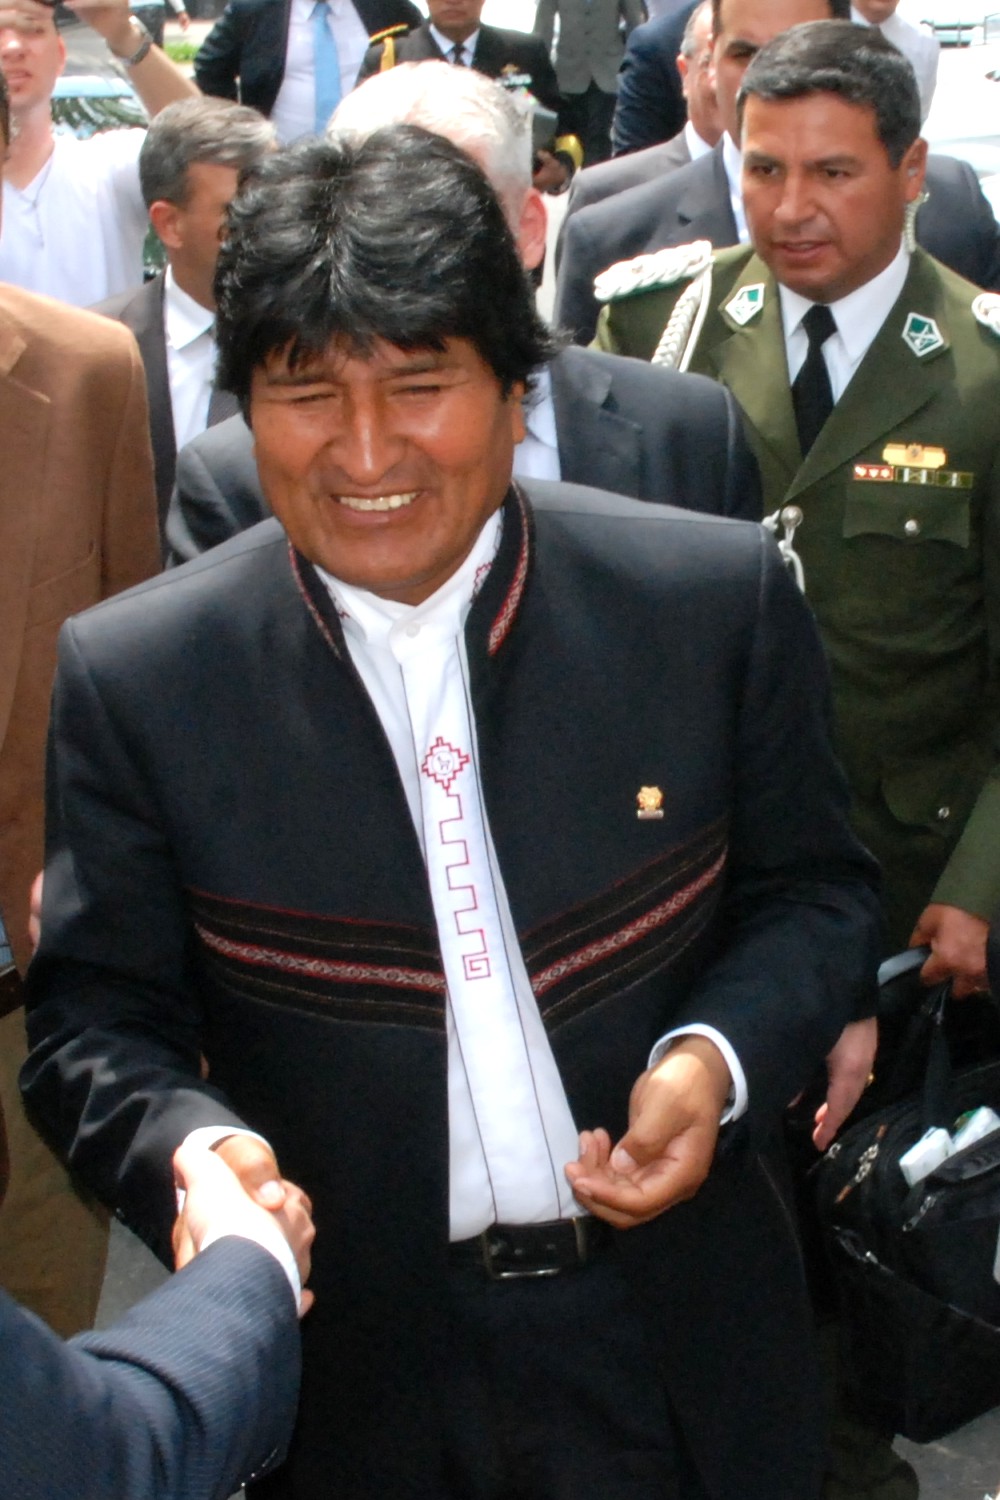 10 de noviembre de 2019 Evo Morales renuncia a la presidencia de Bolivia tras protestas por fraude electoral